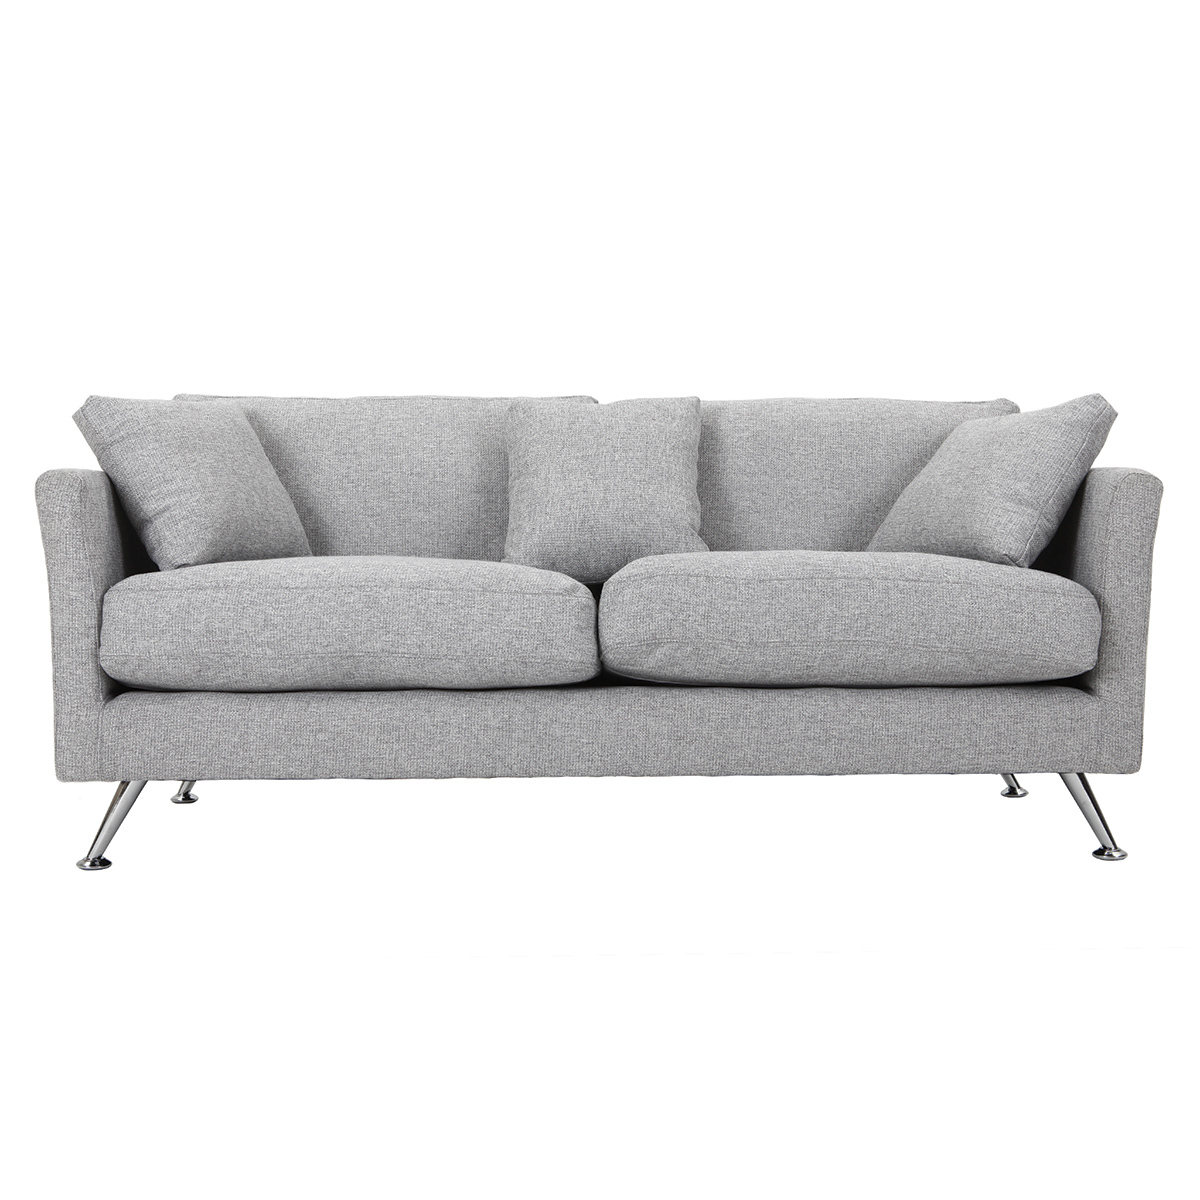 Canapé design 3 places en tissu gris clair et acier chromé VOLUPT